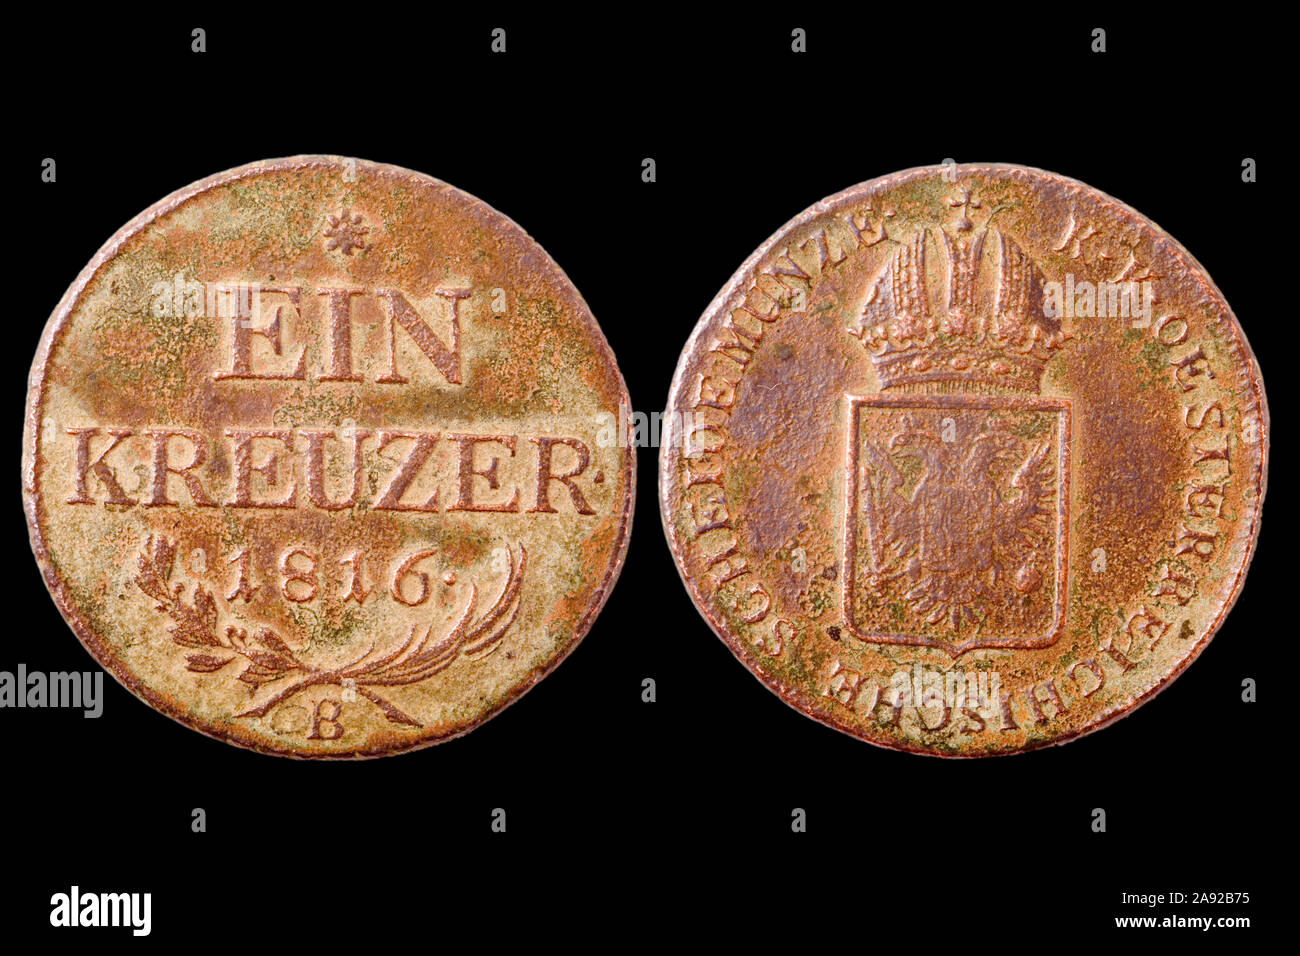 Ein Kreuzer Münze von 1816, Oesterreich Stock Photo